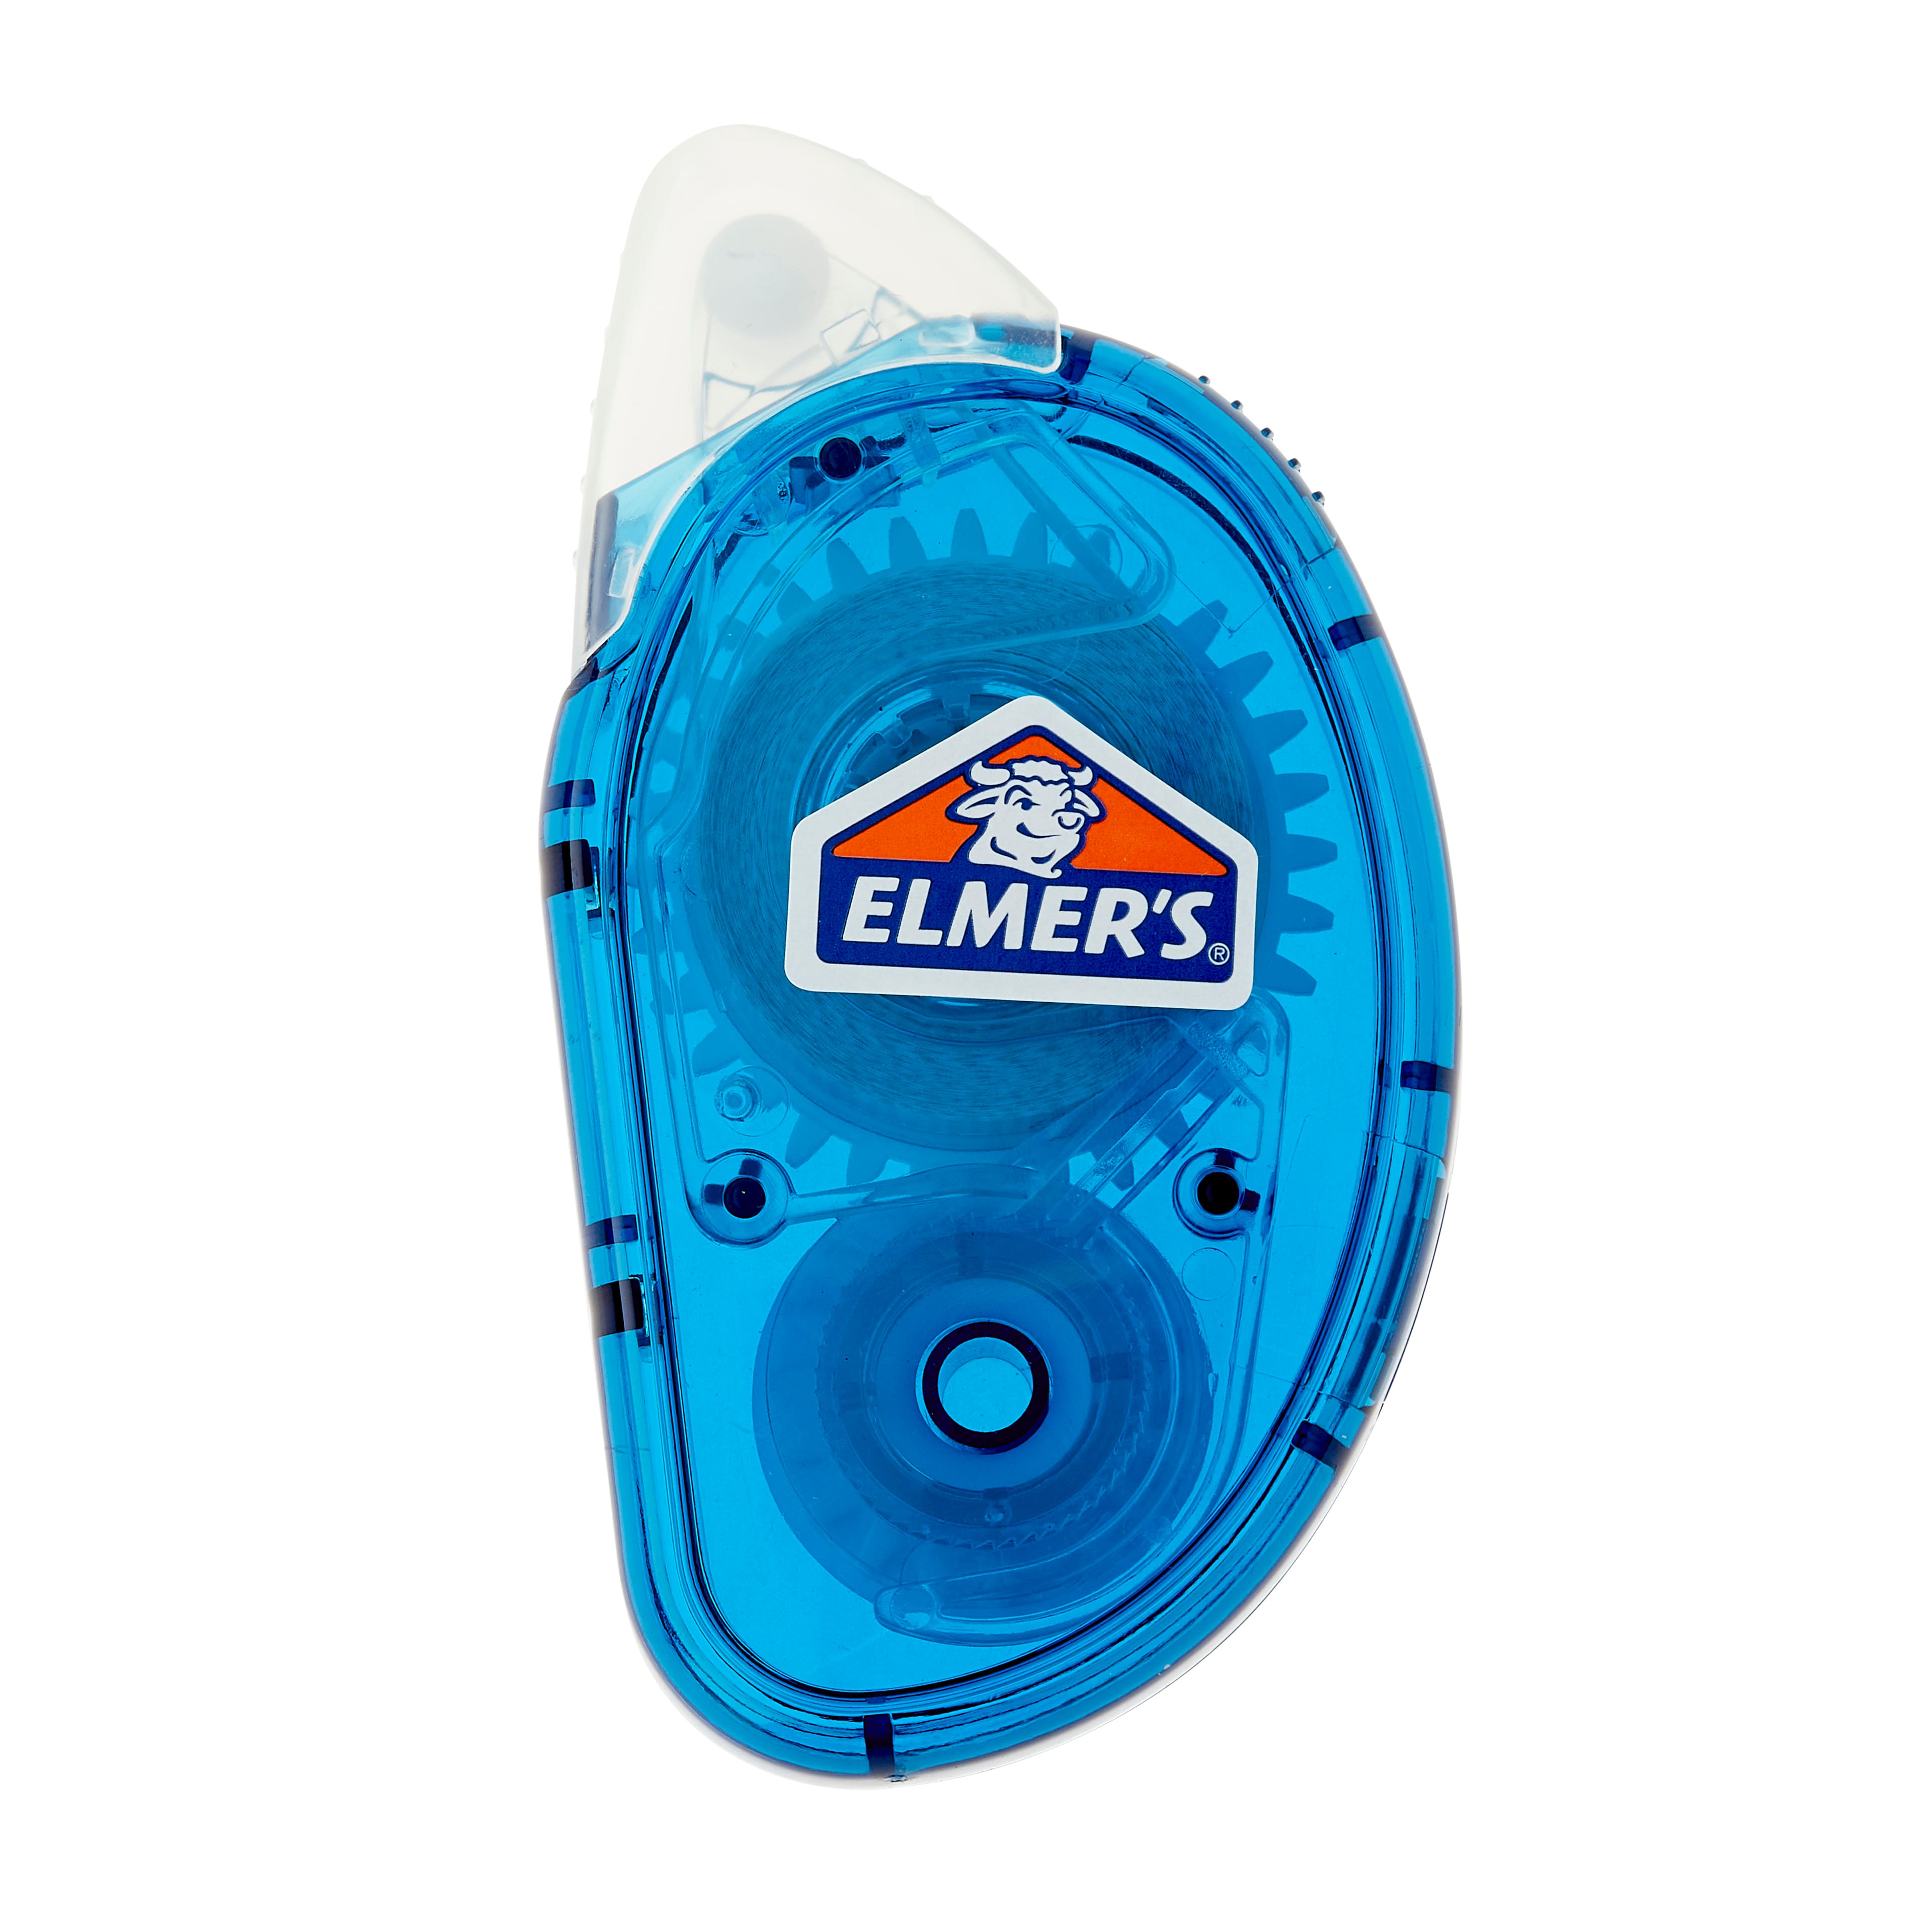 Elmer's CraftBond Dot Runner, Permanent, 26.25 Feet